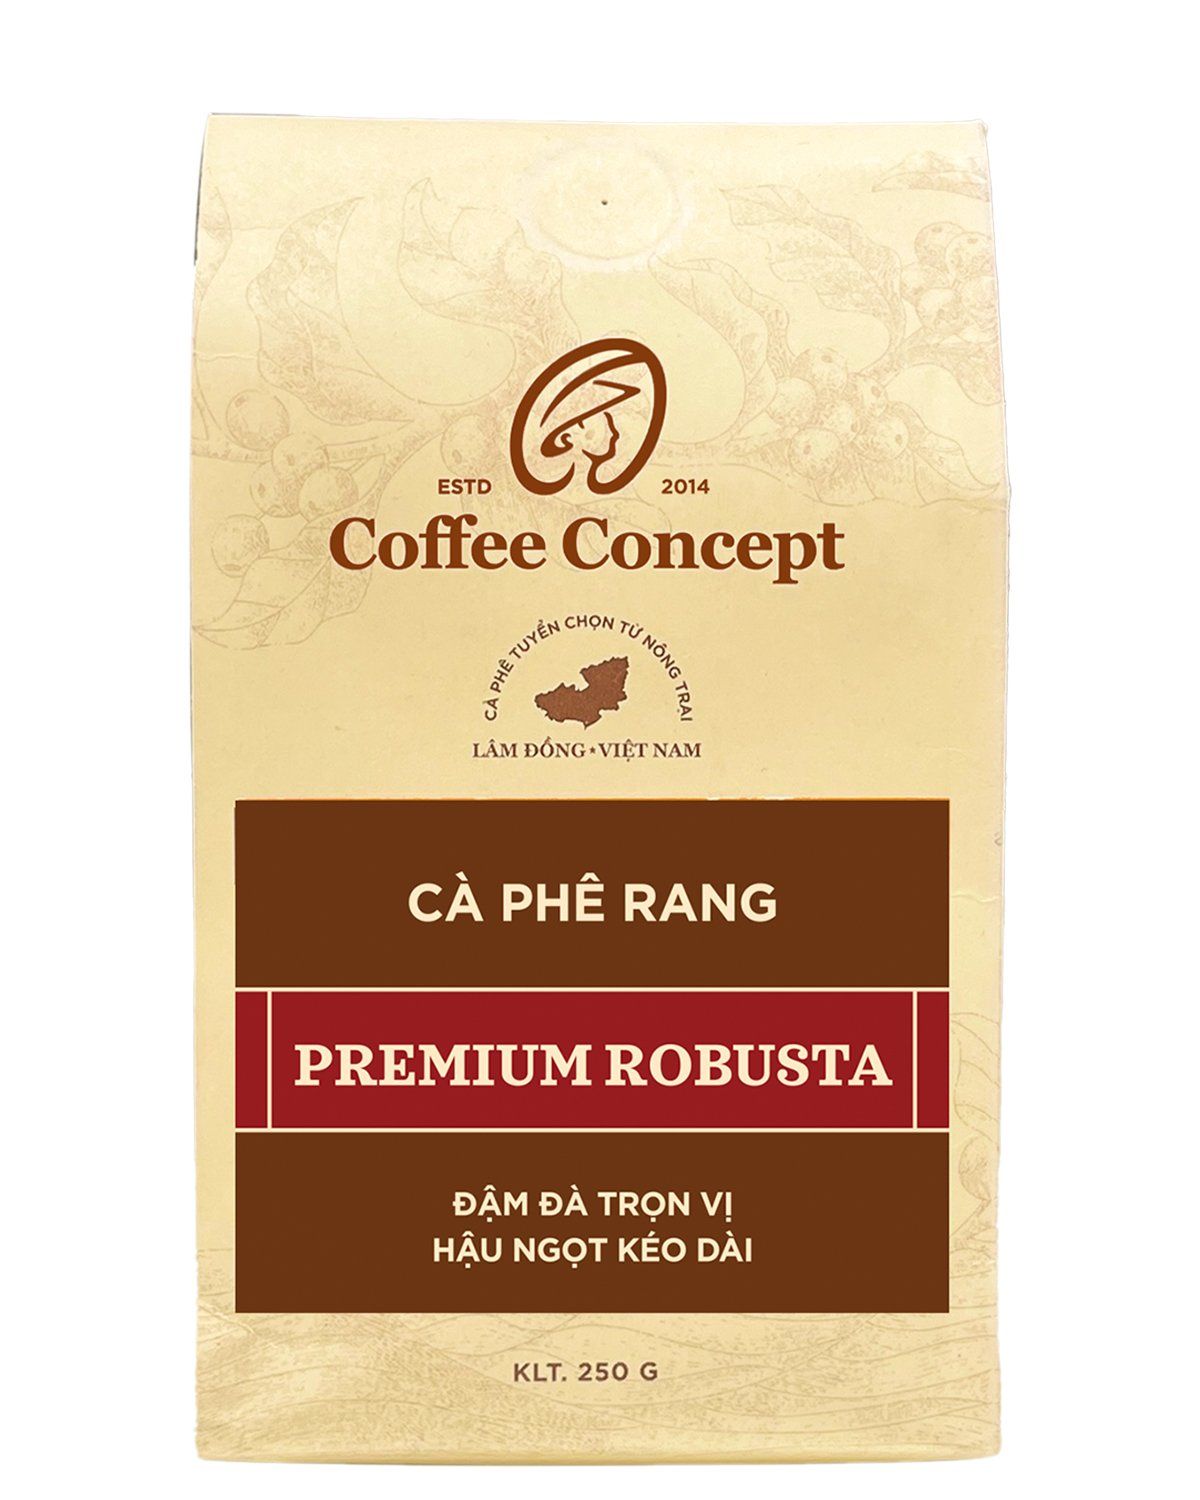  Cà phê rang PREMIUM ROBUSTA - Gói 250G/500G 